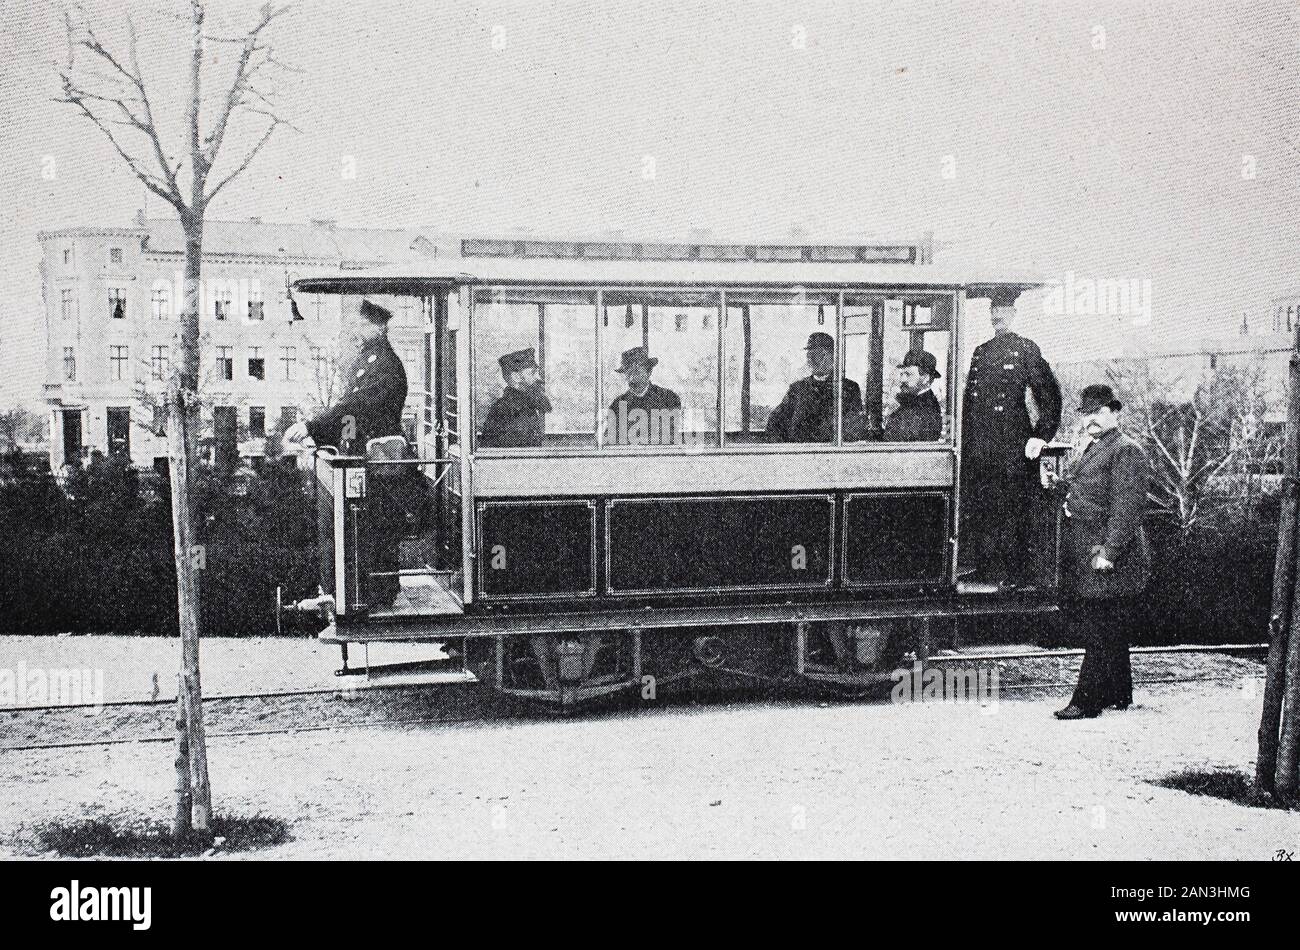 Die Gross Lichterfelde-Tramway war die erste elektrische Straßenbahn der Welt, die von der Firma Siemens & Halske in Lichterfelde-Berlin gebaut wurde. Und ging am 16. Mai 1881 in Betrieb / die Gross Lichterfelde-Tramway war die erste elektrische Straßenbahn der Welt, die von der Firma Siemens & Halske in Lichterfelde-Berlin, gebaut und am 16. Mai 1881 in Betrieb genommen wurde, historisch, digital verbesserte Wiedergabe eines Originals aus dem 19. Jahrhundert / Digitale Produktion einer Originalanlage aus dem 19. Jahrhunderts Stockfoto